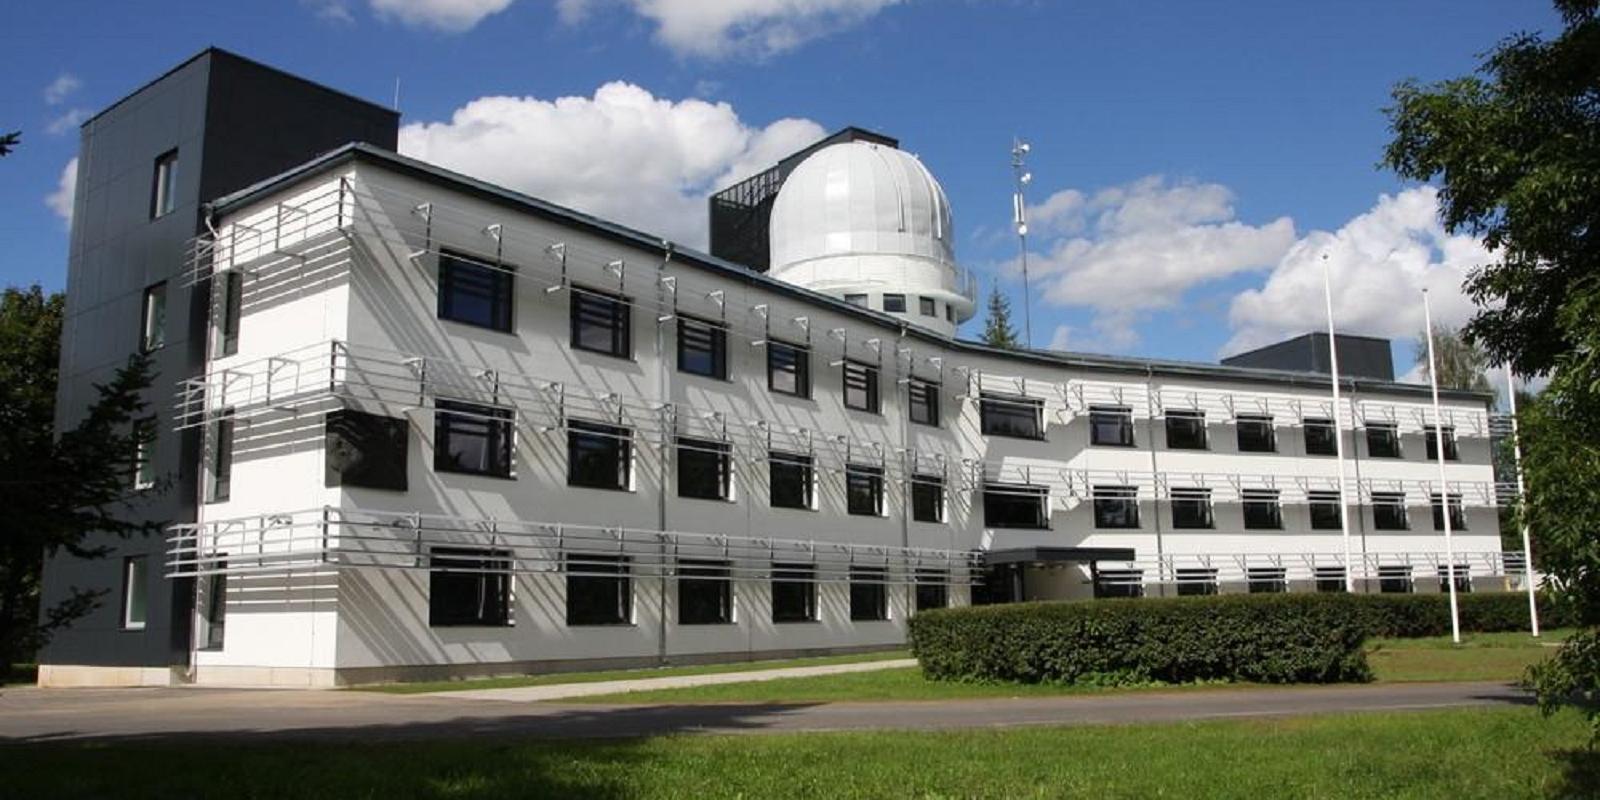 Observatorium der Universität Tartu